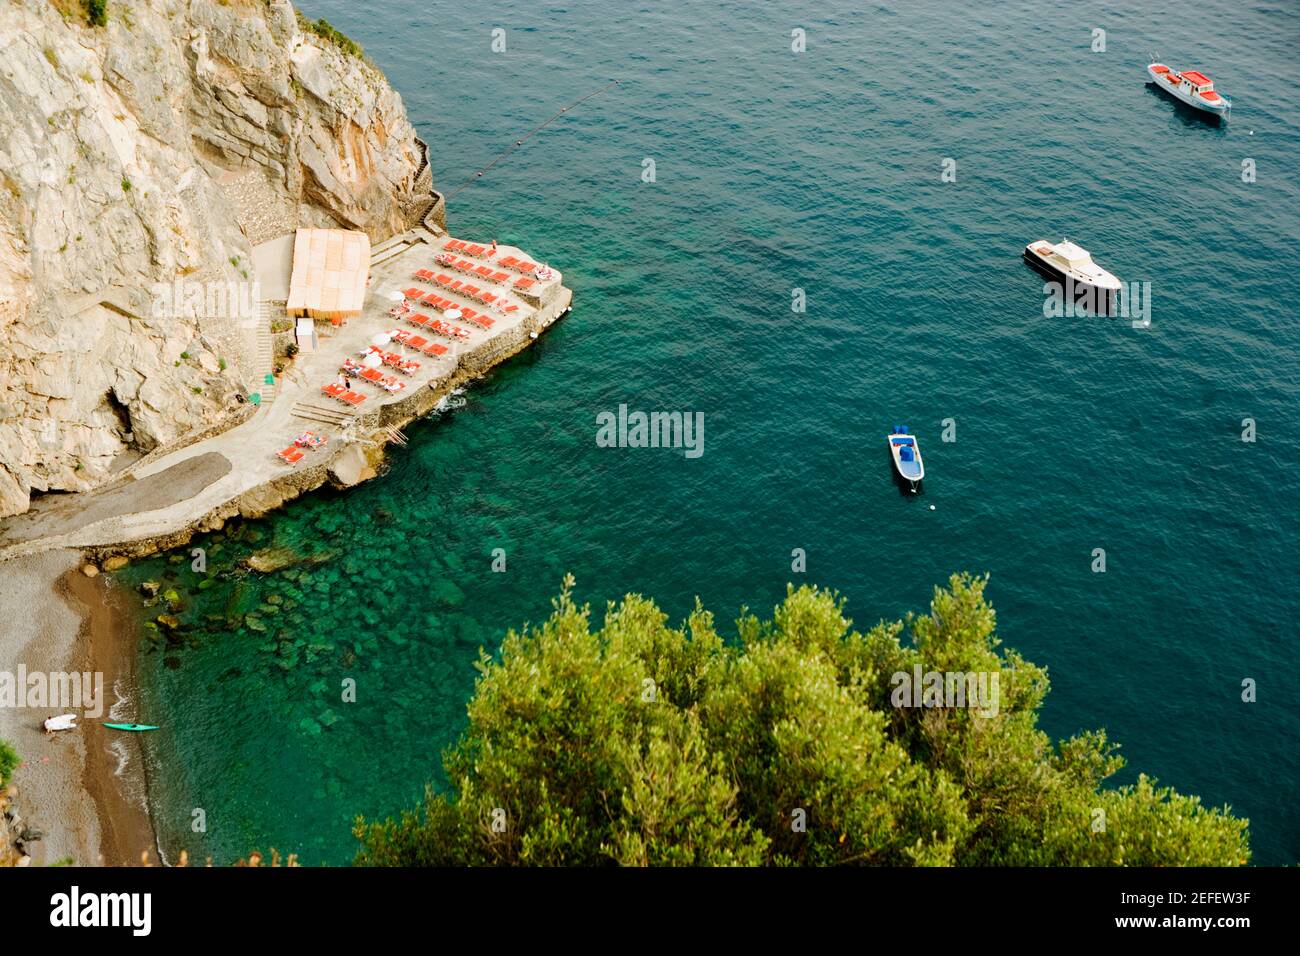 Vue en grand angle des bateaux flottant sur l'eau, Spiaggia San Pietro, Costiera Amalfitana, Salerno, Campanie, Italie Banque D'Images